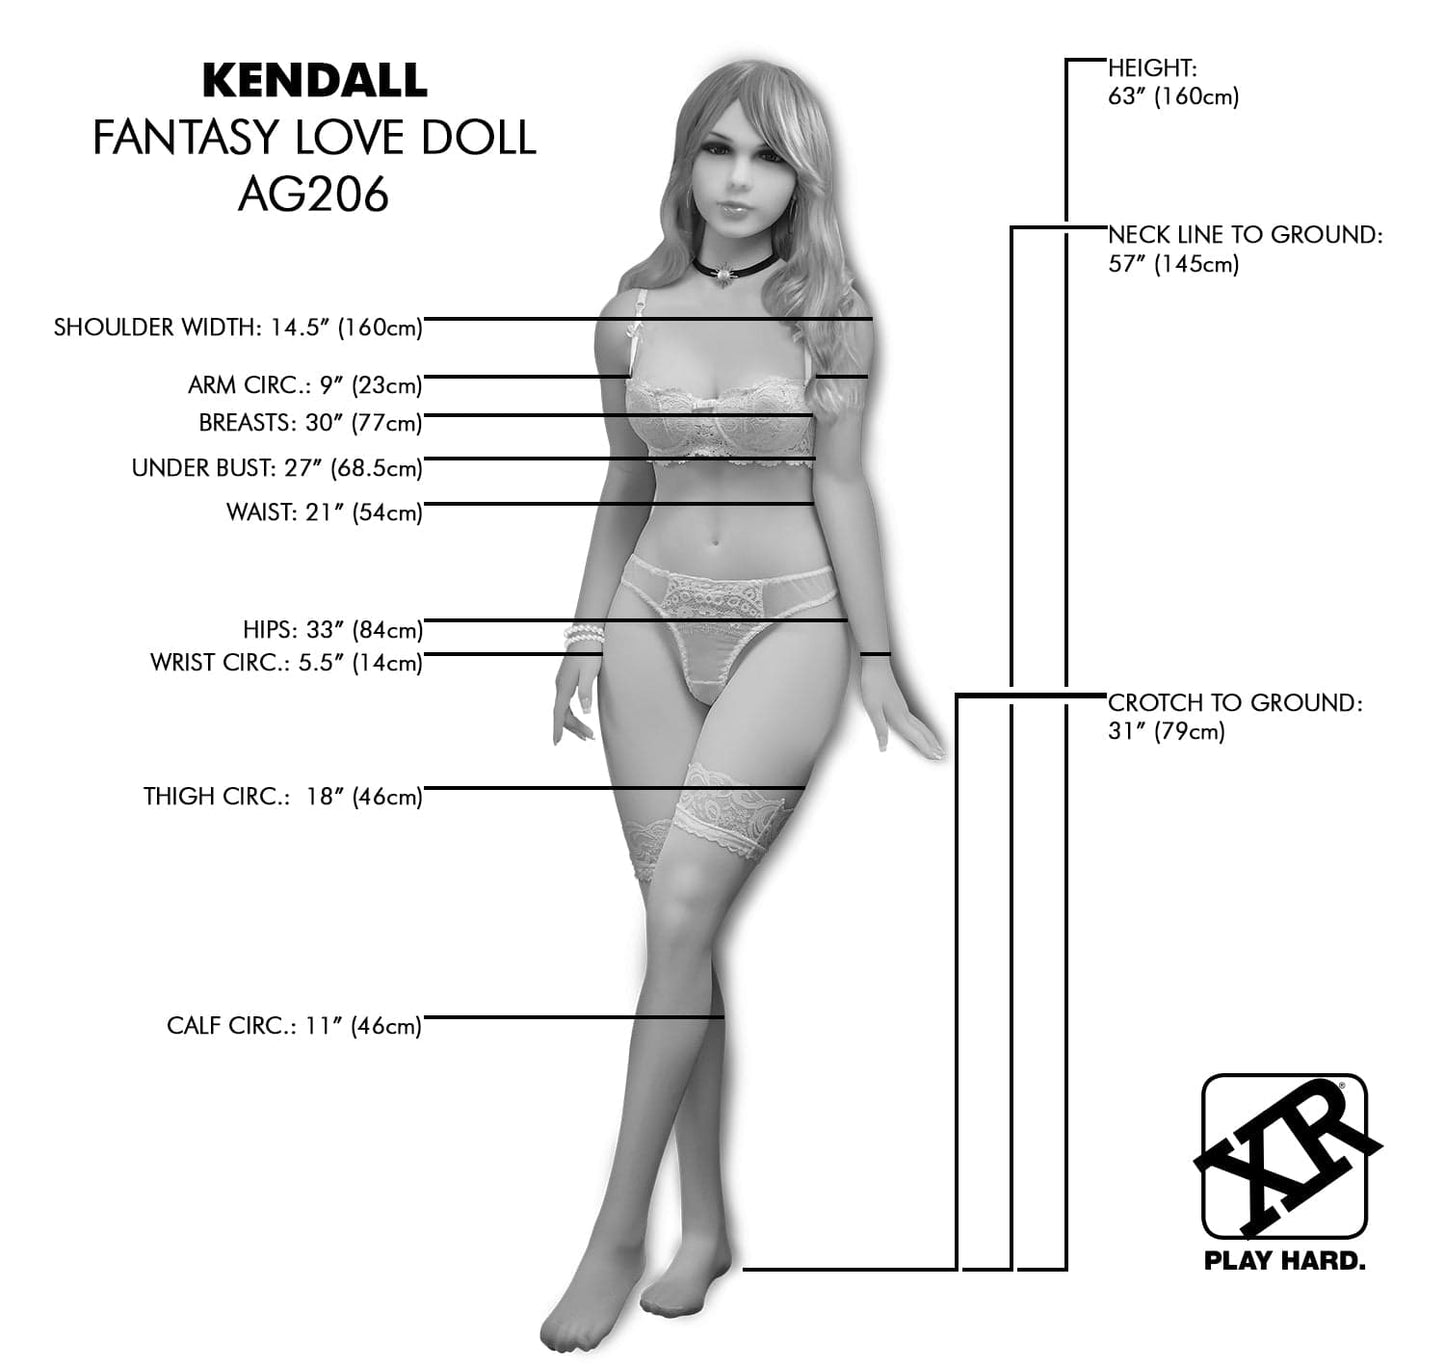 NextGen Dolls Full Body Doll Vanilla NextGen Dolls - Kendall Fantasy Love Doll at the Haus of Shag